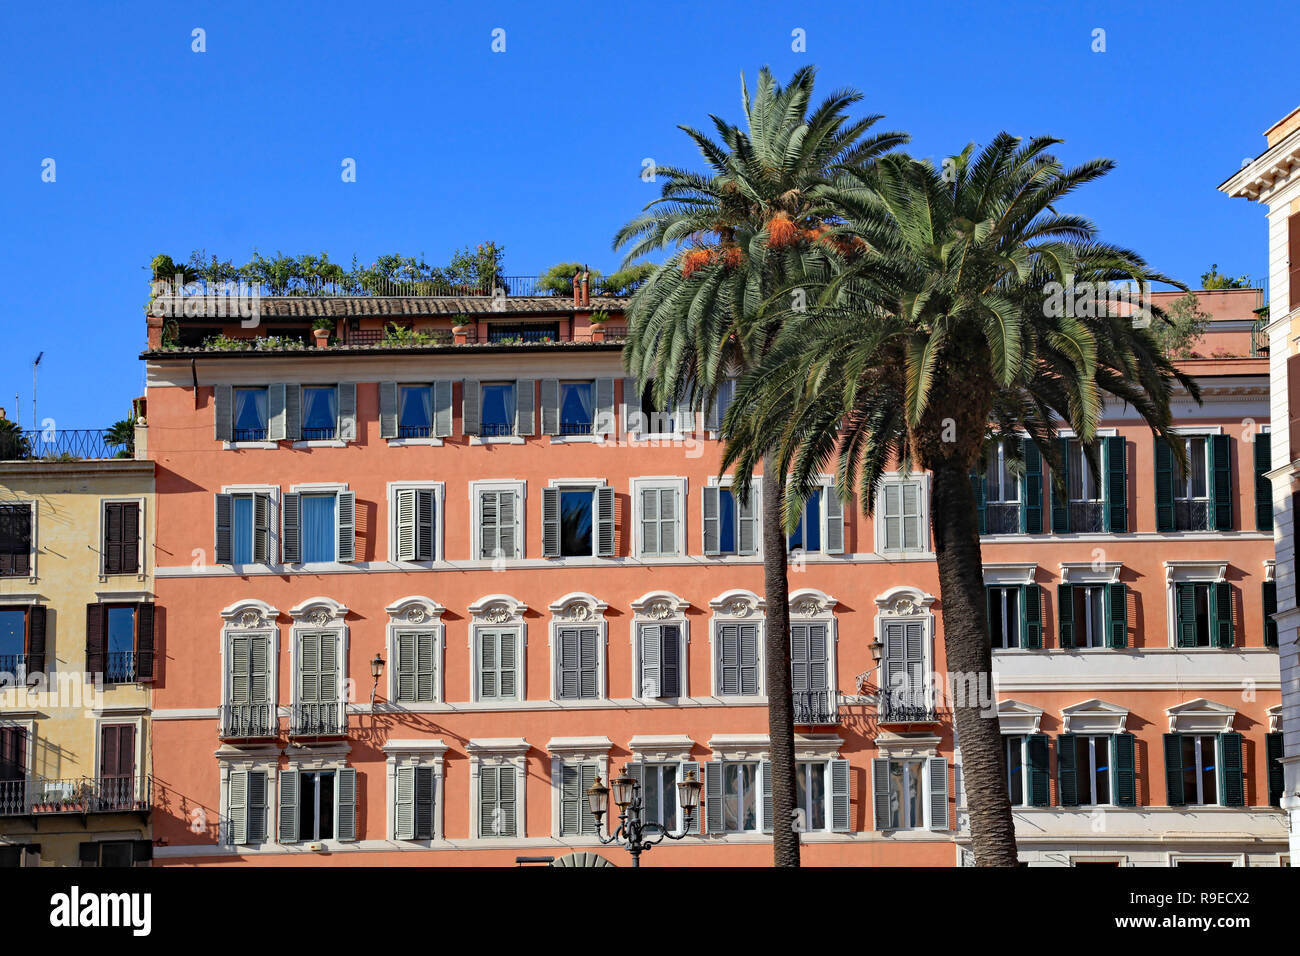 L'Europe du sud coloré vacances la façade de l'immeuble avec des palmiers Banque D'Images